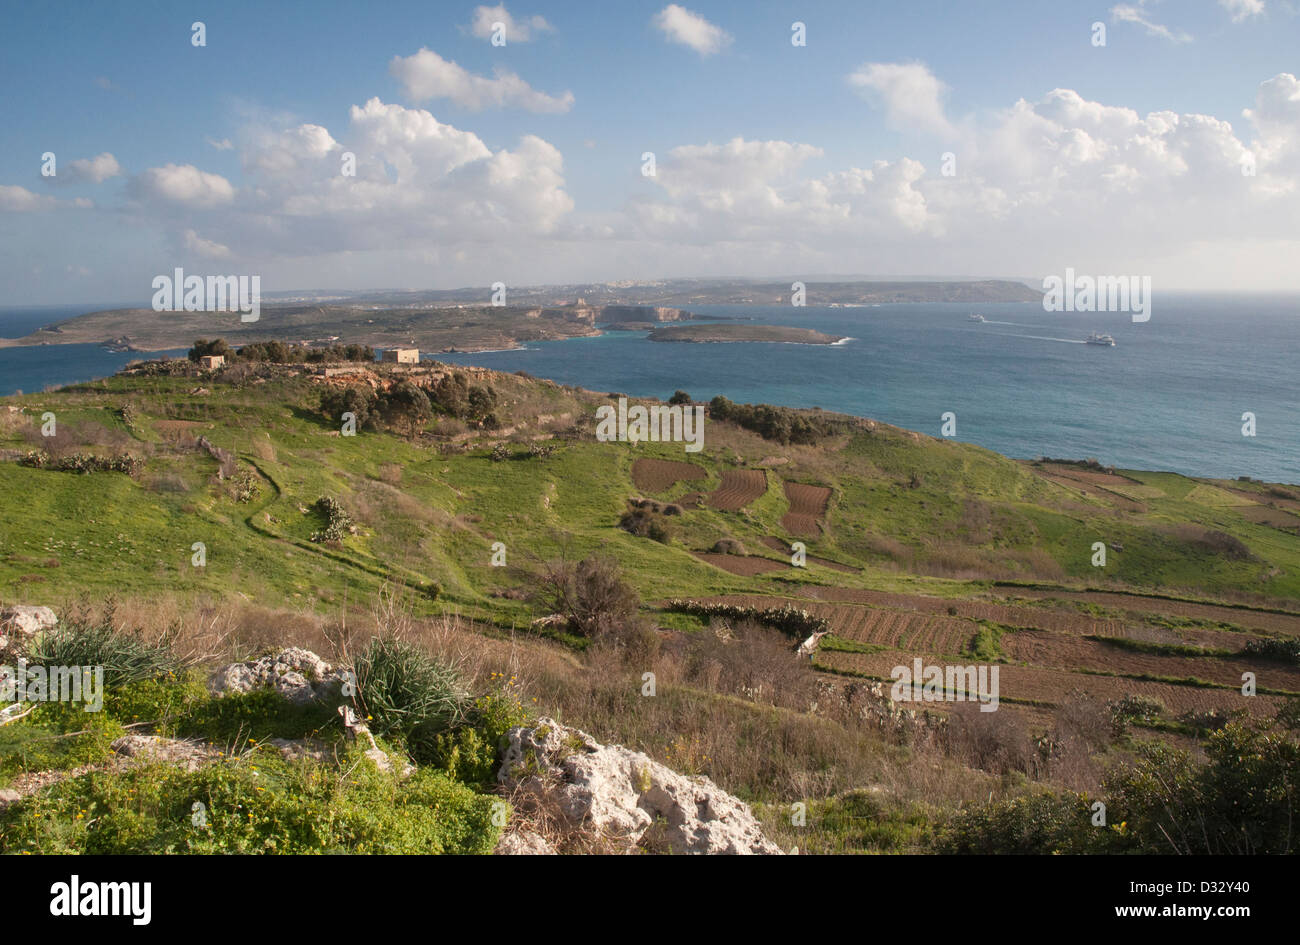 Gozo Landschaft, Vista, Rasen, Sträucher, Steinmauern, Meer in Ferne, sonnig, blauer Himmel, weiße Wolken. Felsen Stockfoto